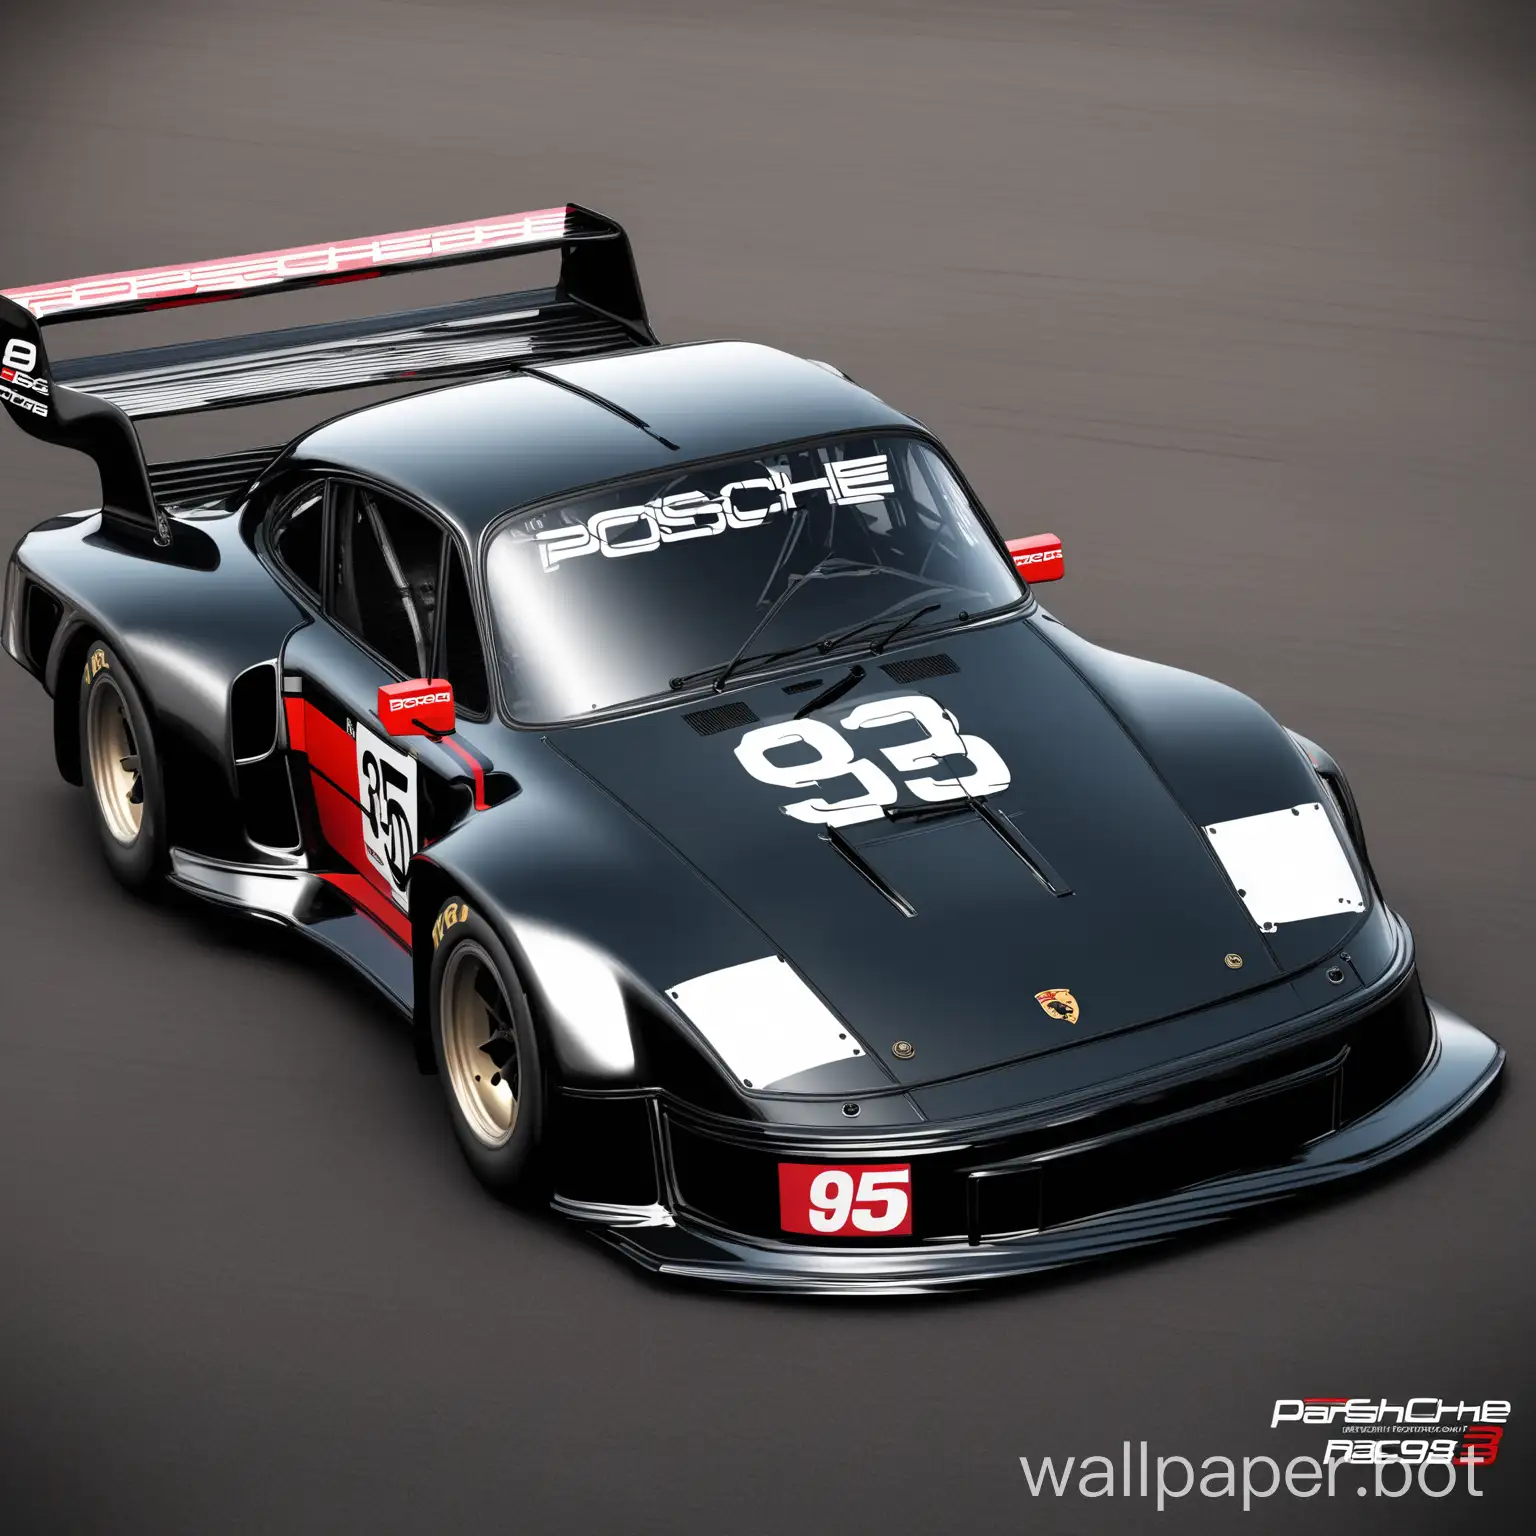 Porsche-935-Race-Car-in-Full-Carbon-Fiber-HighSpeed-Racing-Art